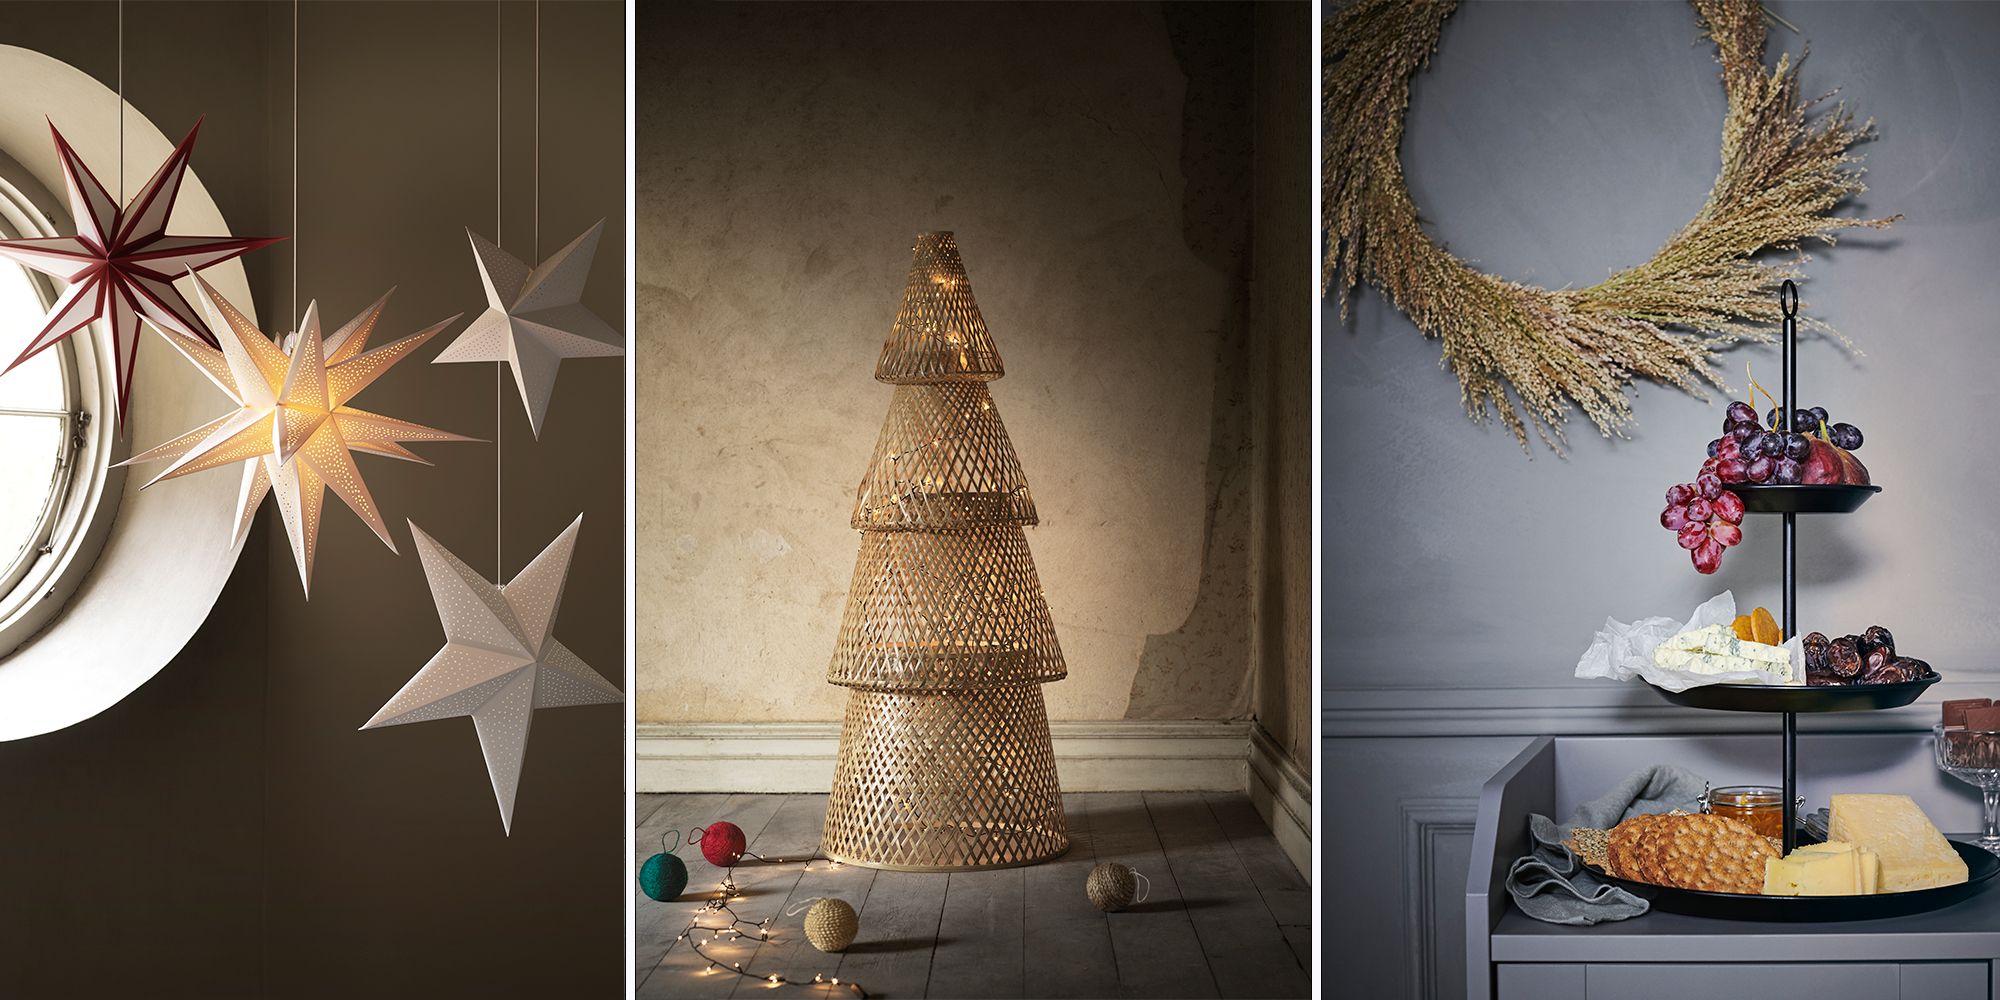 sentar Valiente Viajero Ideas de decoración de Navidad 2020 - 2021 vistas en Ikea